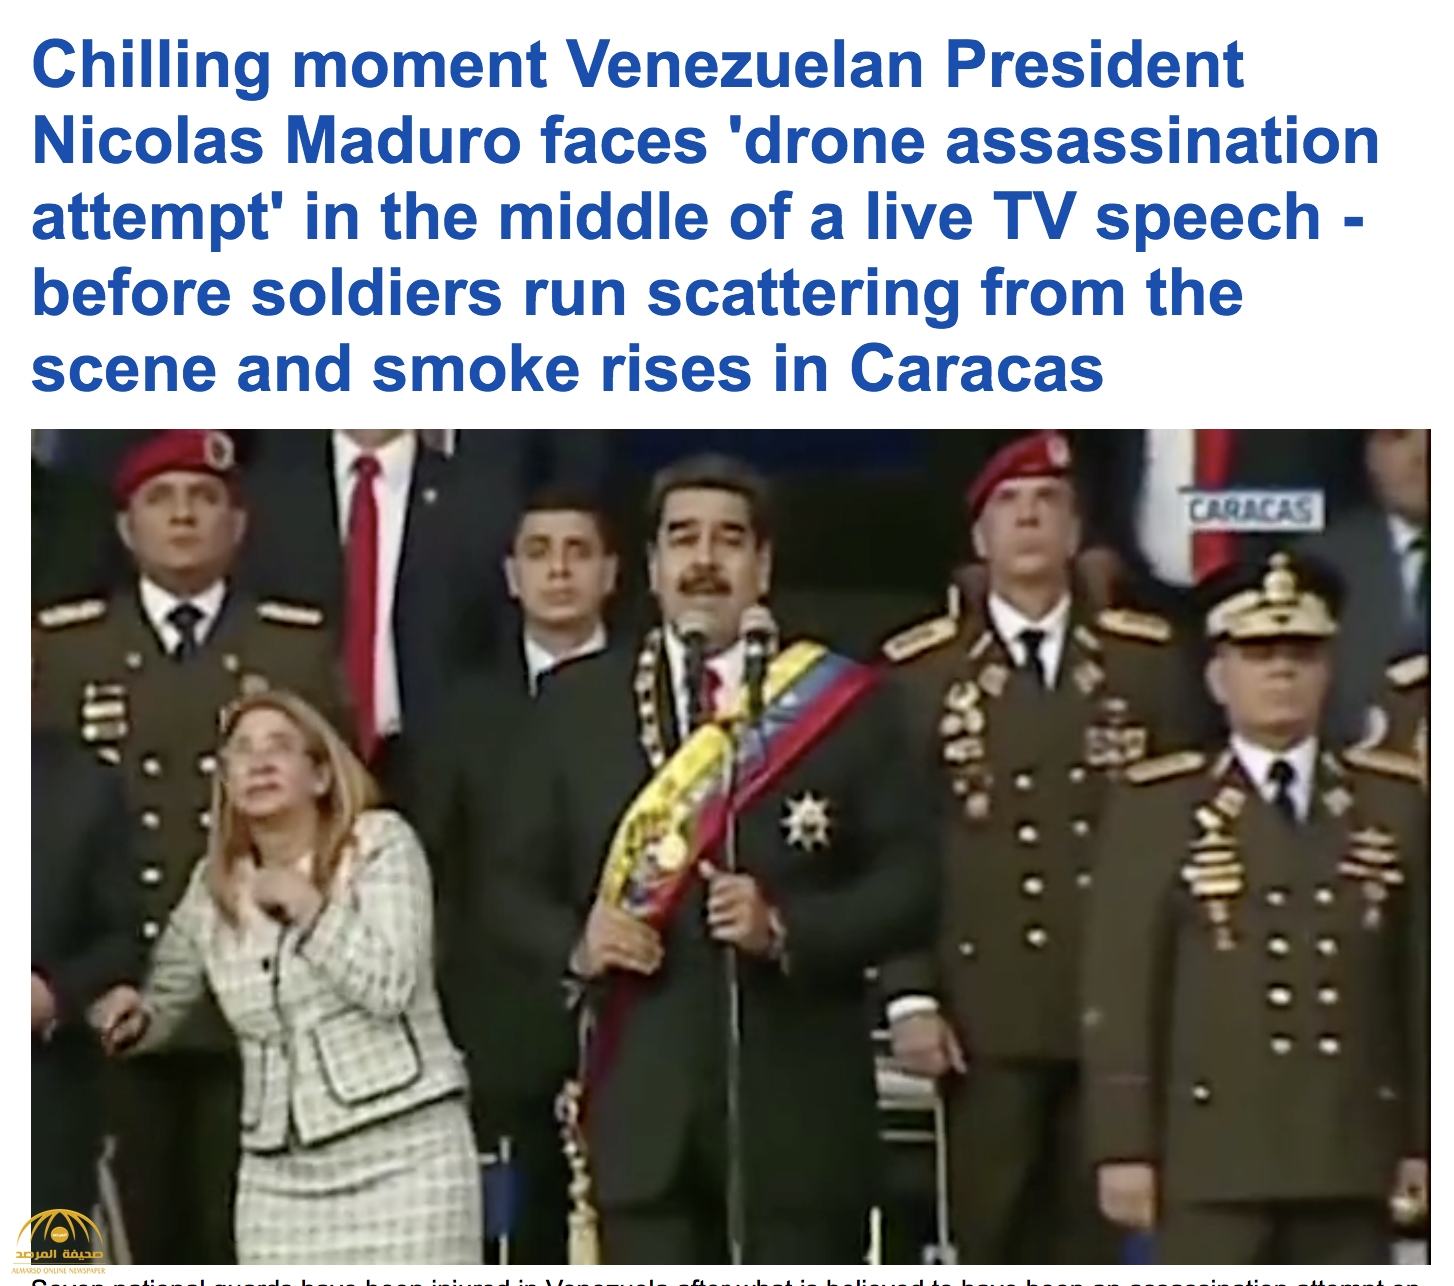 شاهد لحظة محاولة اغتيال رئيس فنزويلا بطائرة مسيرة تحمل متفجرات أثناء عرض عسكري